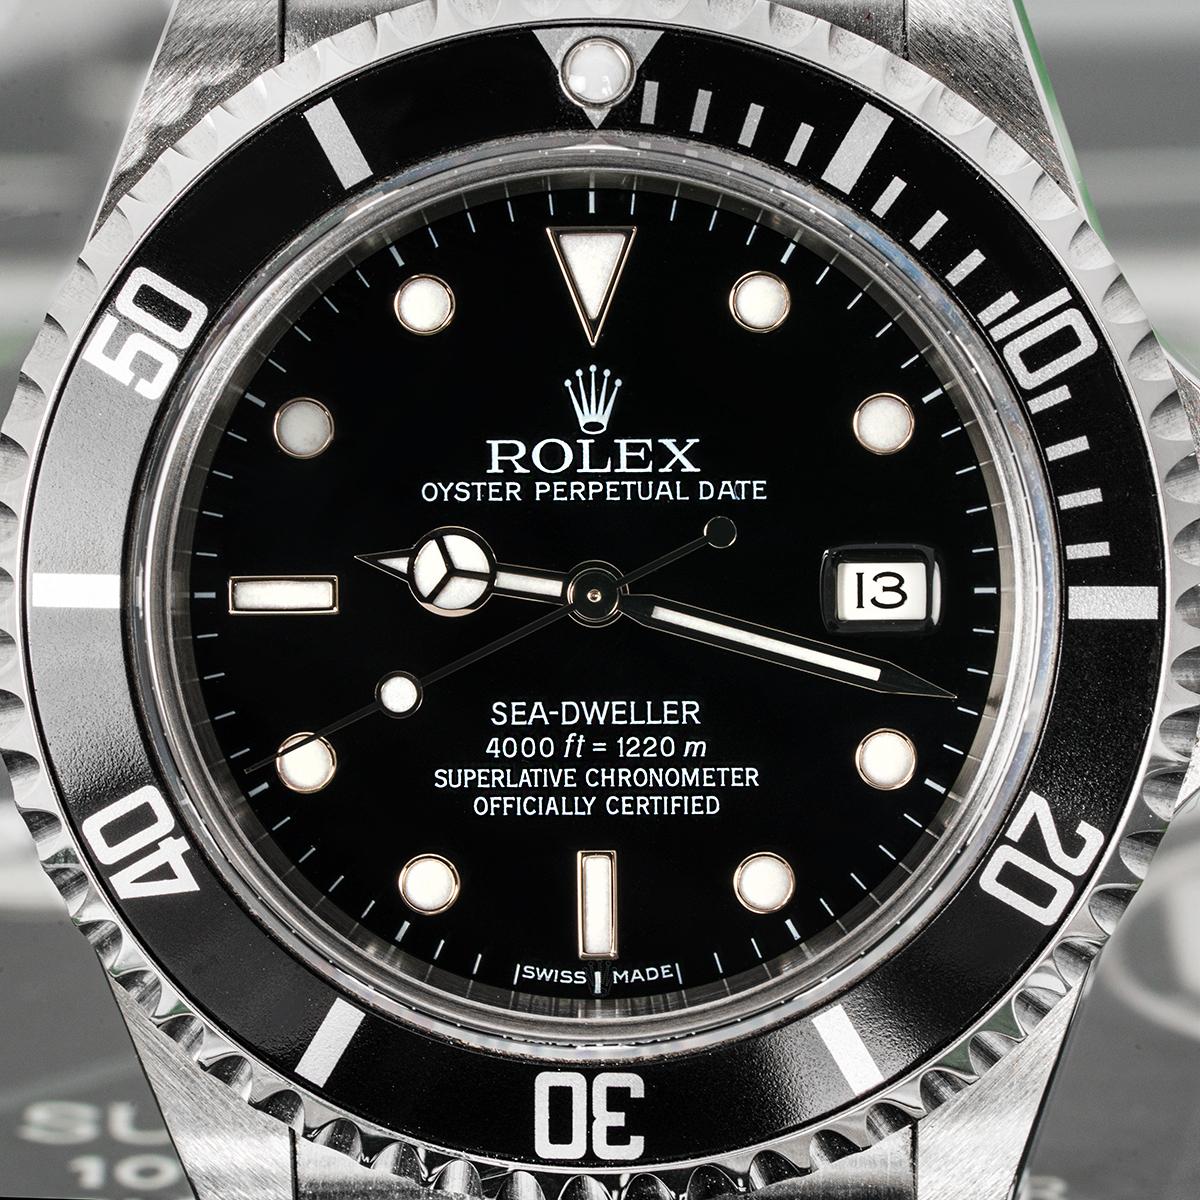 Eine NOS 40mm Sea-Dweller von Rolex. Sie verfügt über ein schwarzes Zifferblatt mit applizierten Stundenmarkierungen, eine Datumsanzeige und eine schwarze, einseitig drehbare Lünette mit 60-Minuten-Teilung.

Das Oyster-Armband ist mit einer